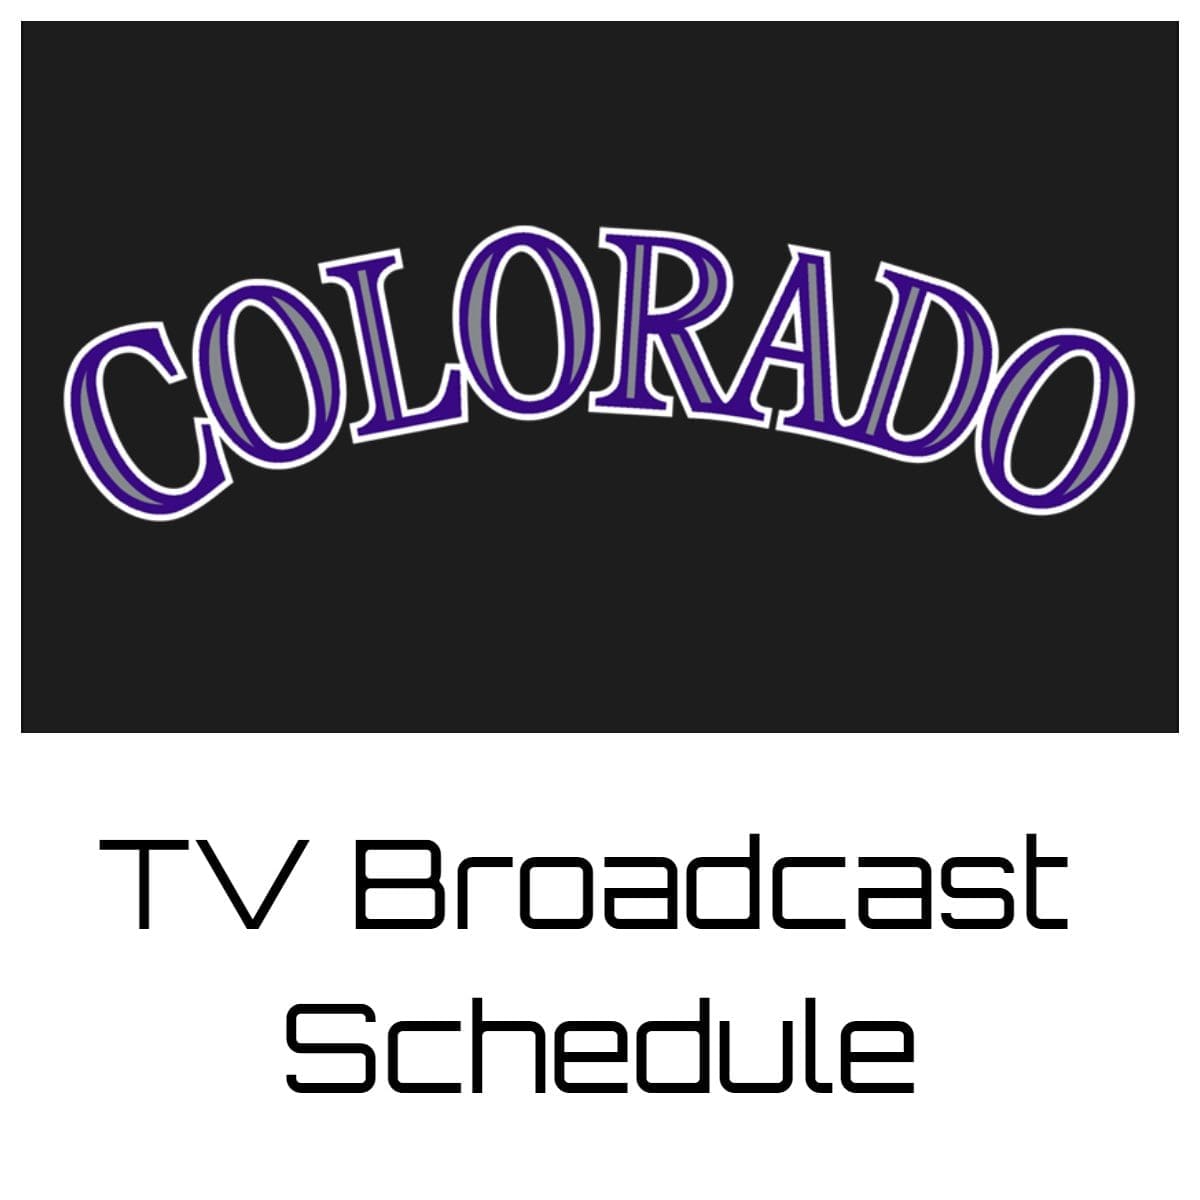 Colorado Rockies TV Broadcast Schedule